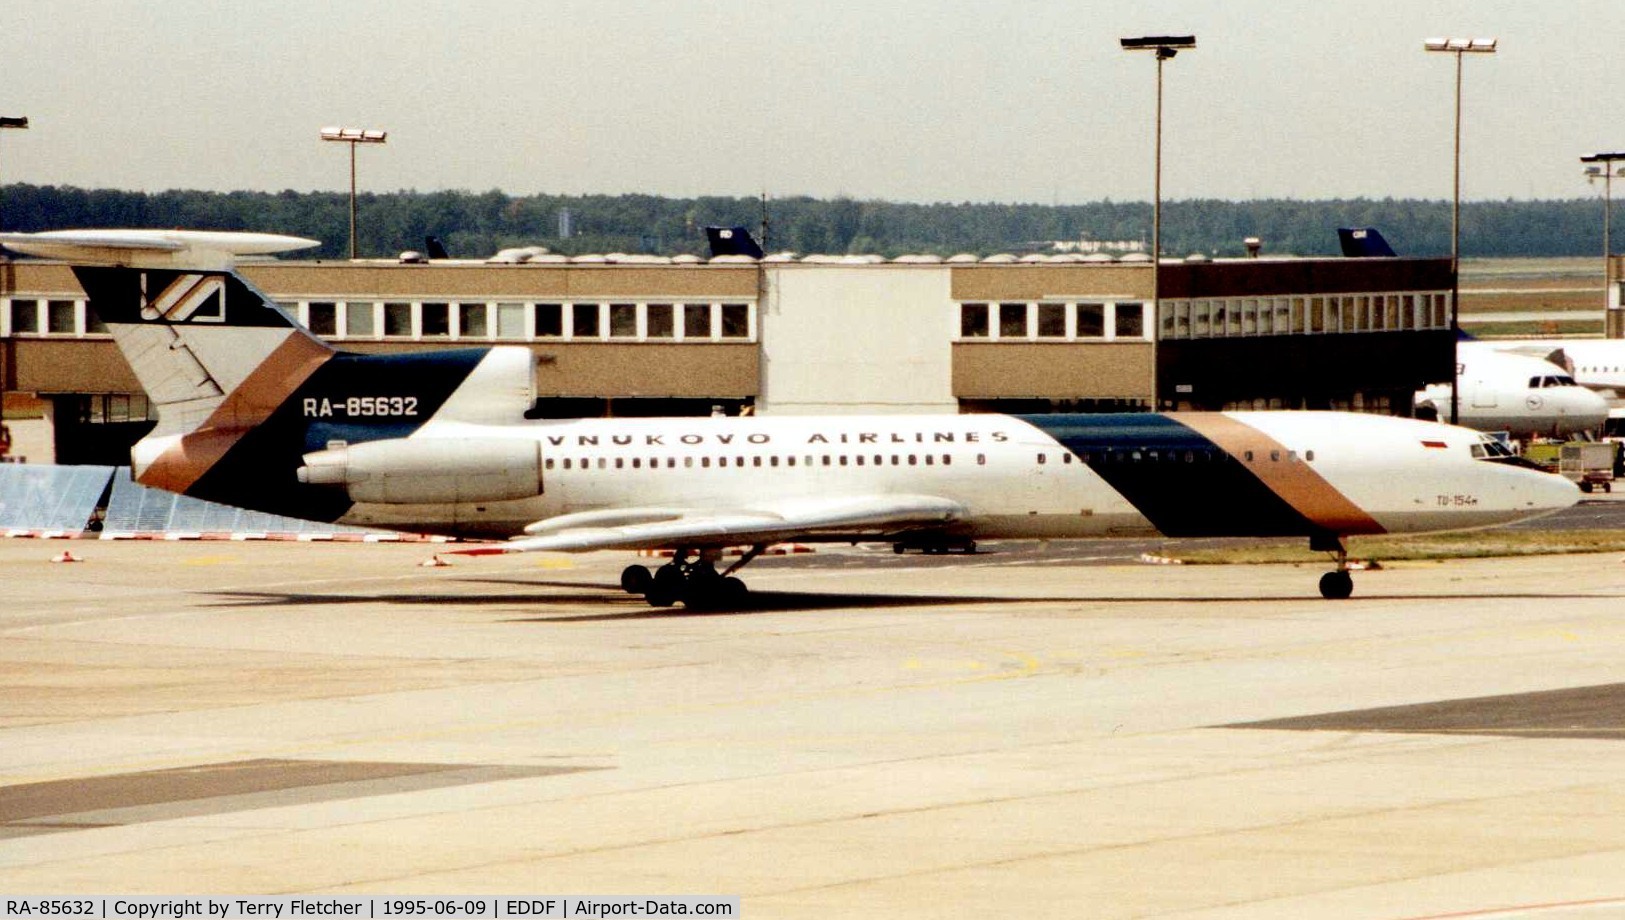 RA-85632, 1987 Tupolev Tu-154M C/N 87A761, Pulkova Tu 154 taxies in at Frankfurt in 1995